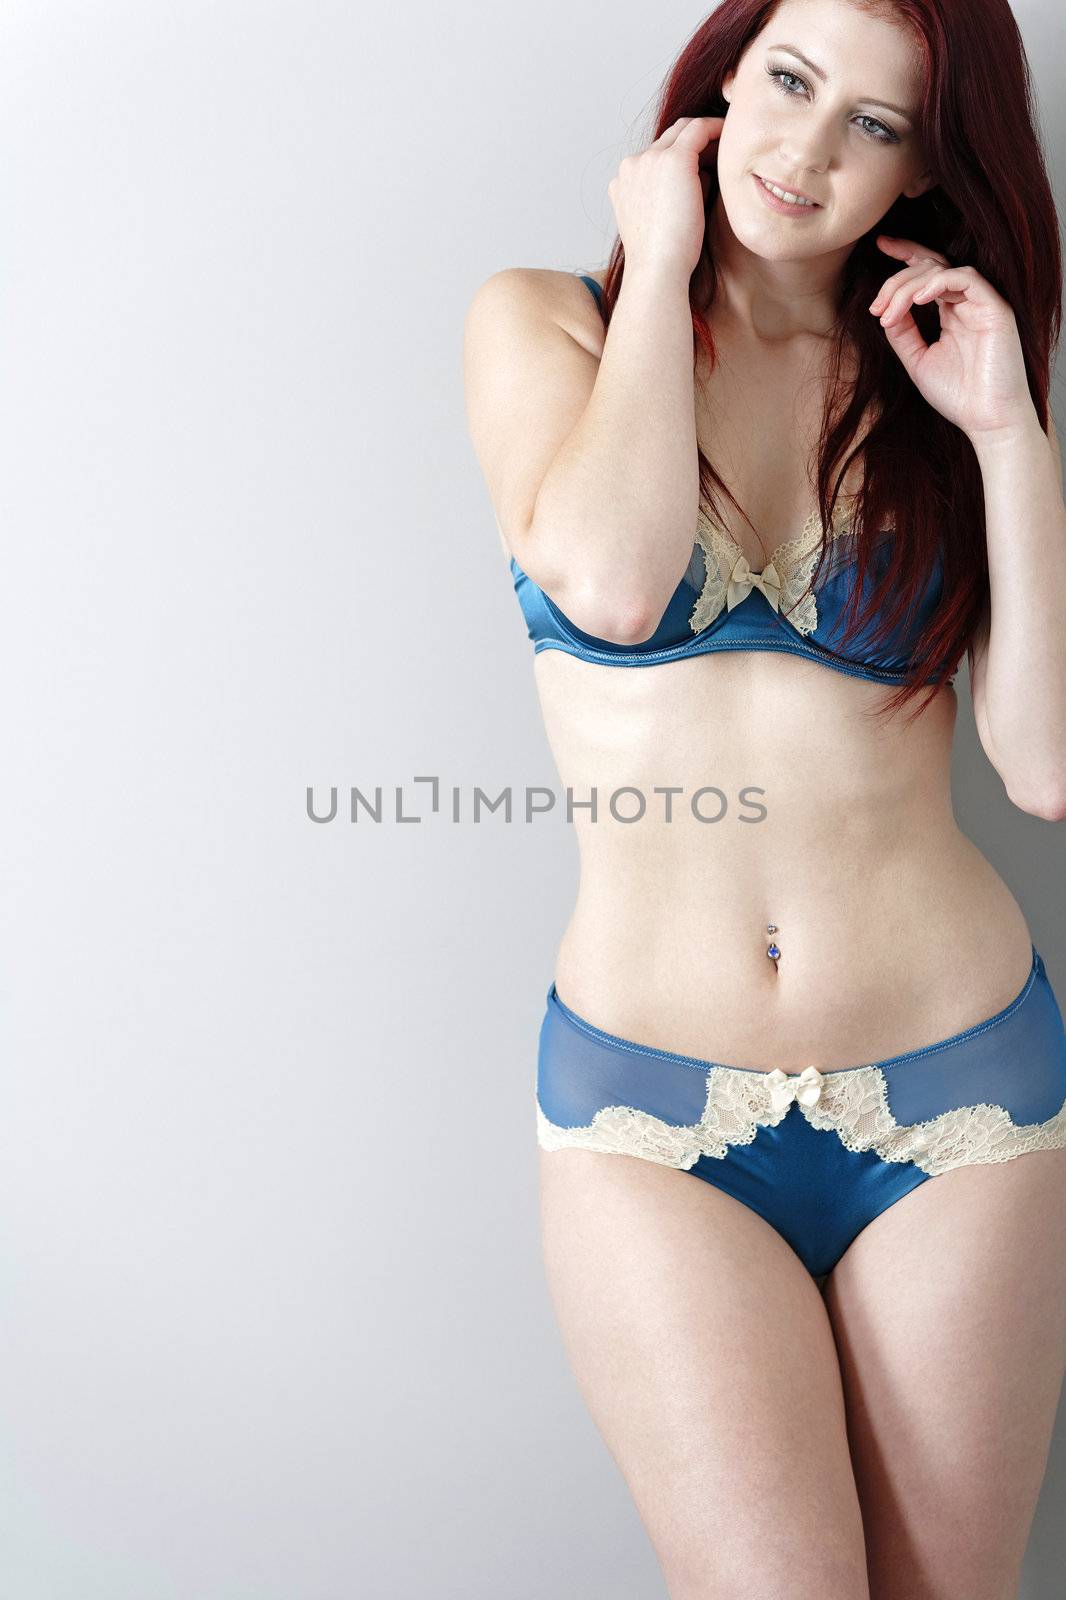 Smiling woman in blue underwear by studiofi